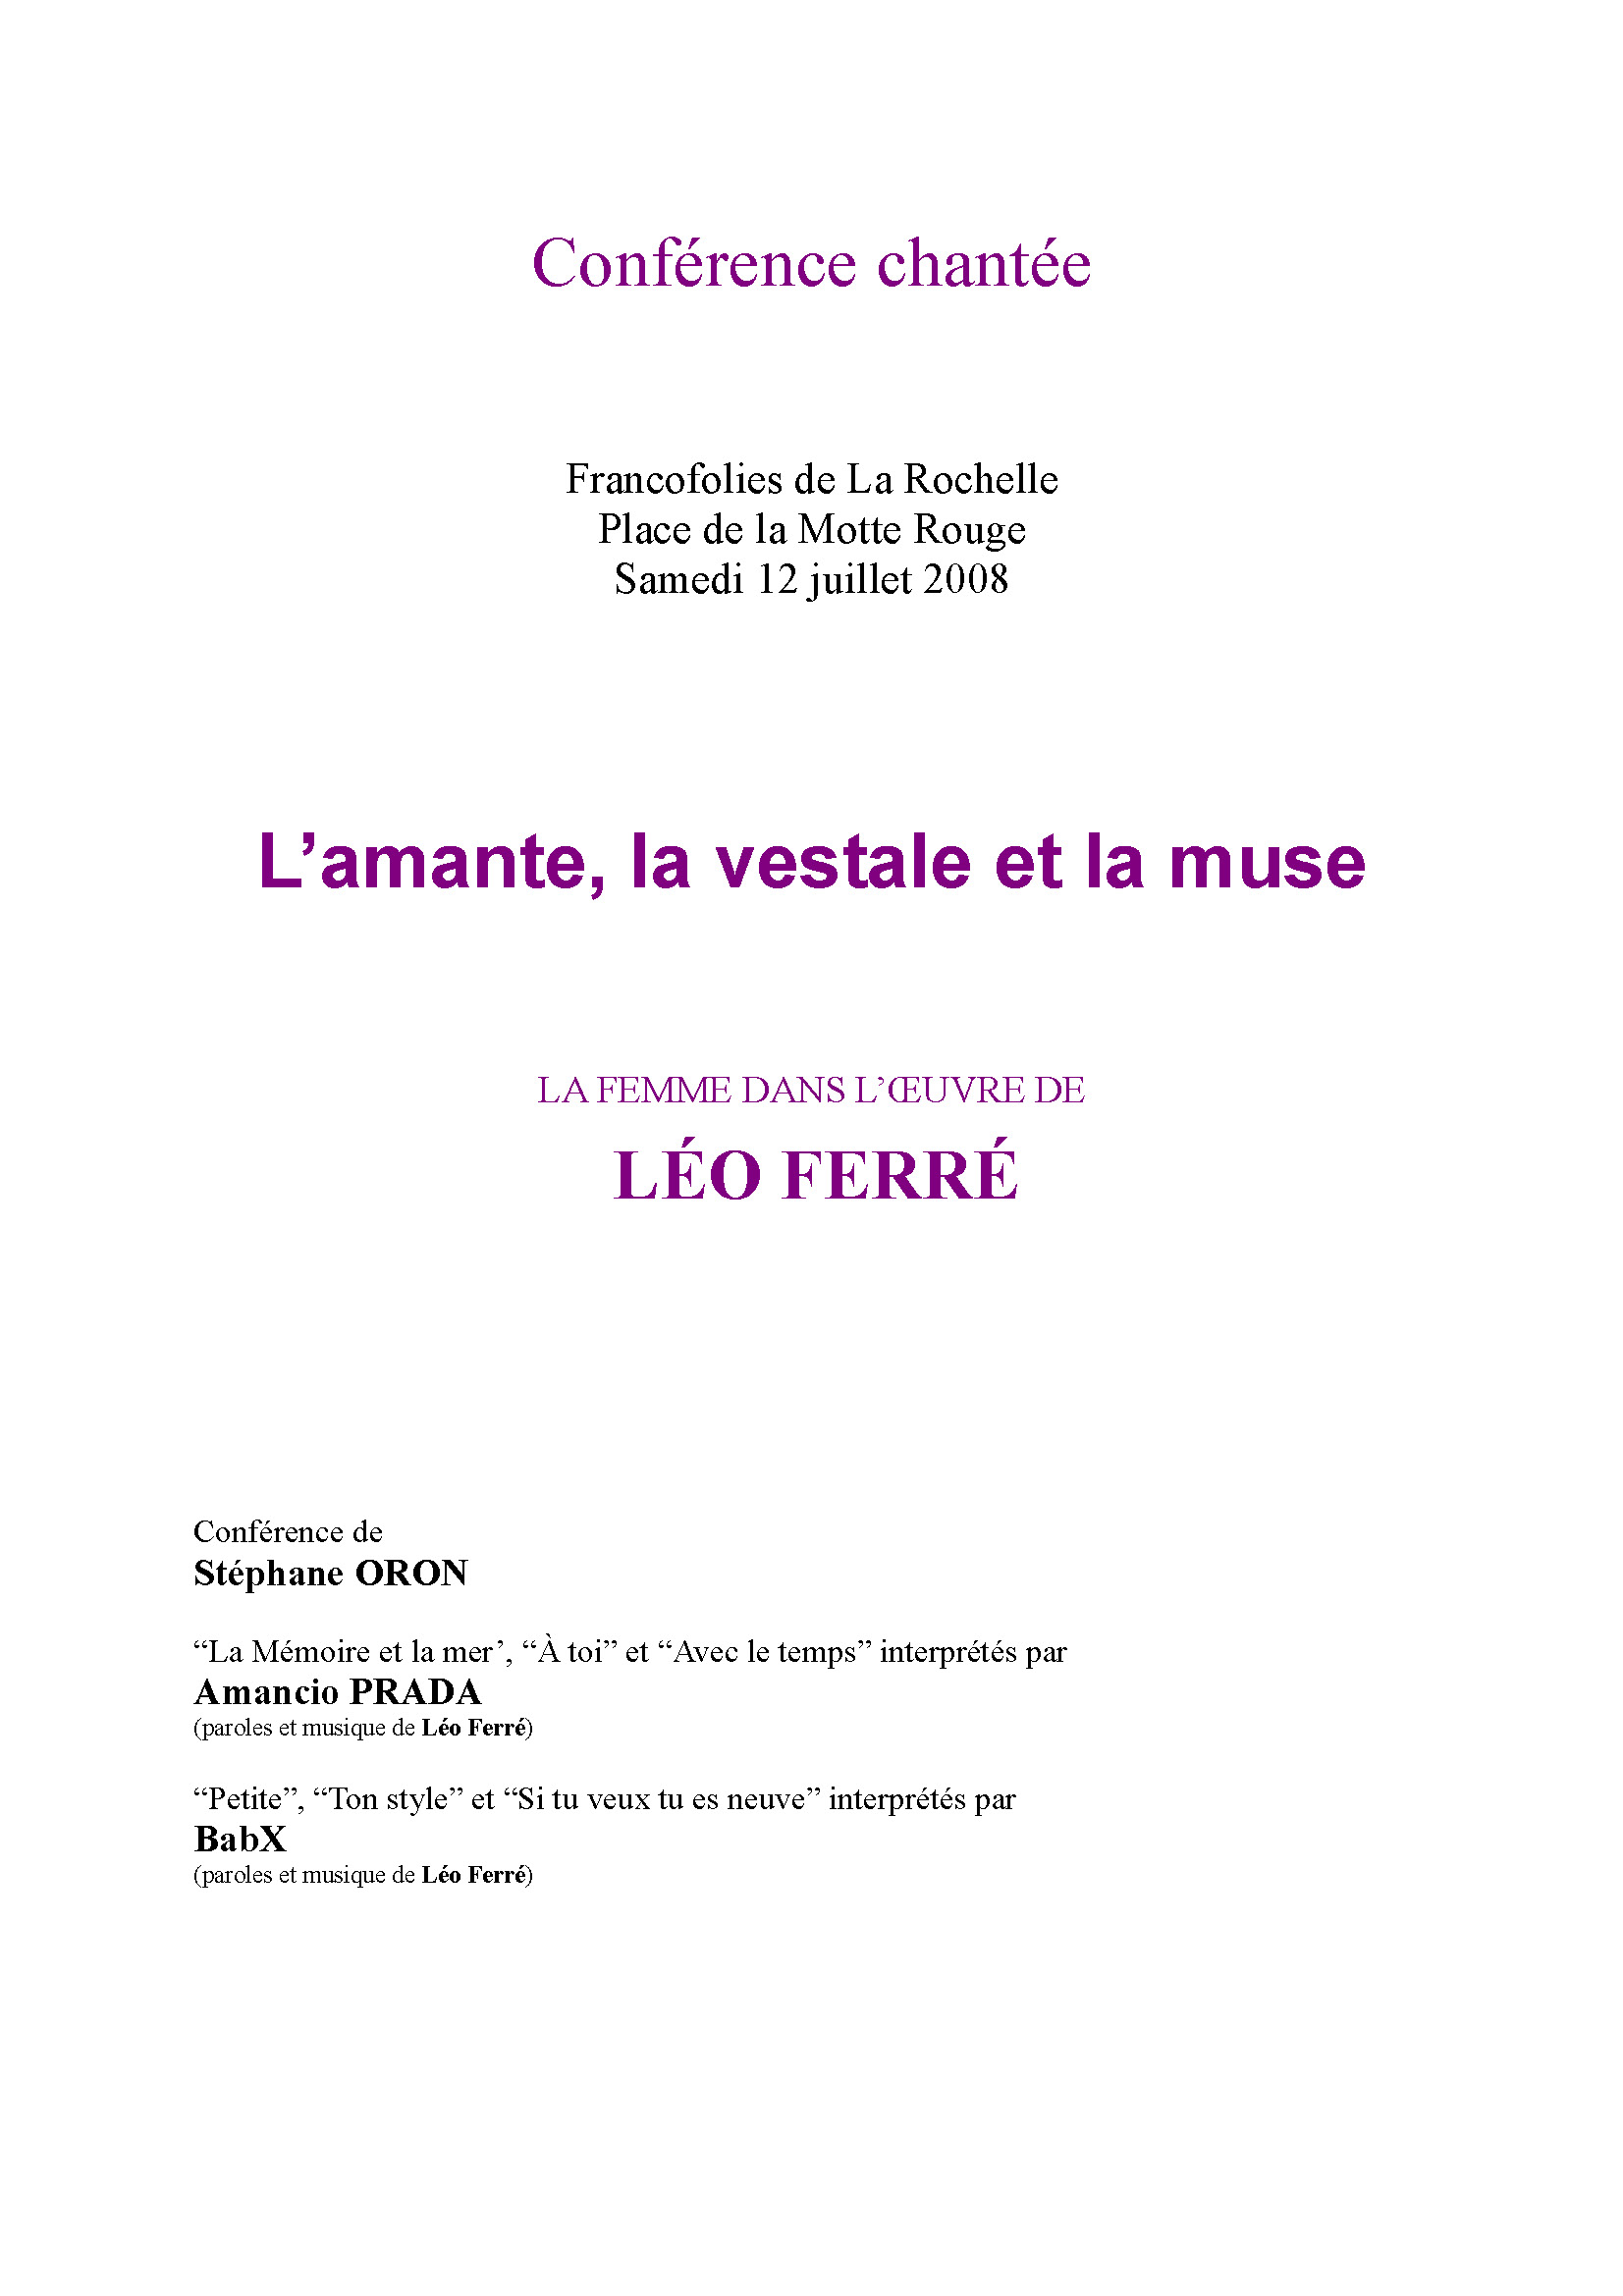 12/07/2008 conférence sur Léo Ferré à La Rochelle